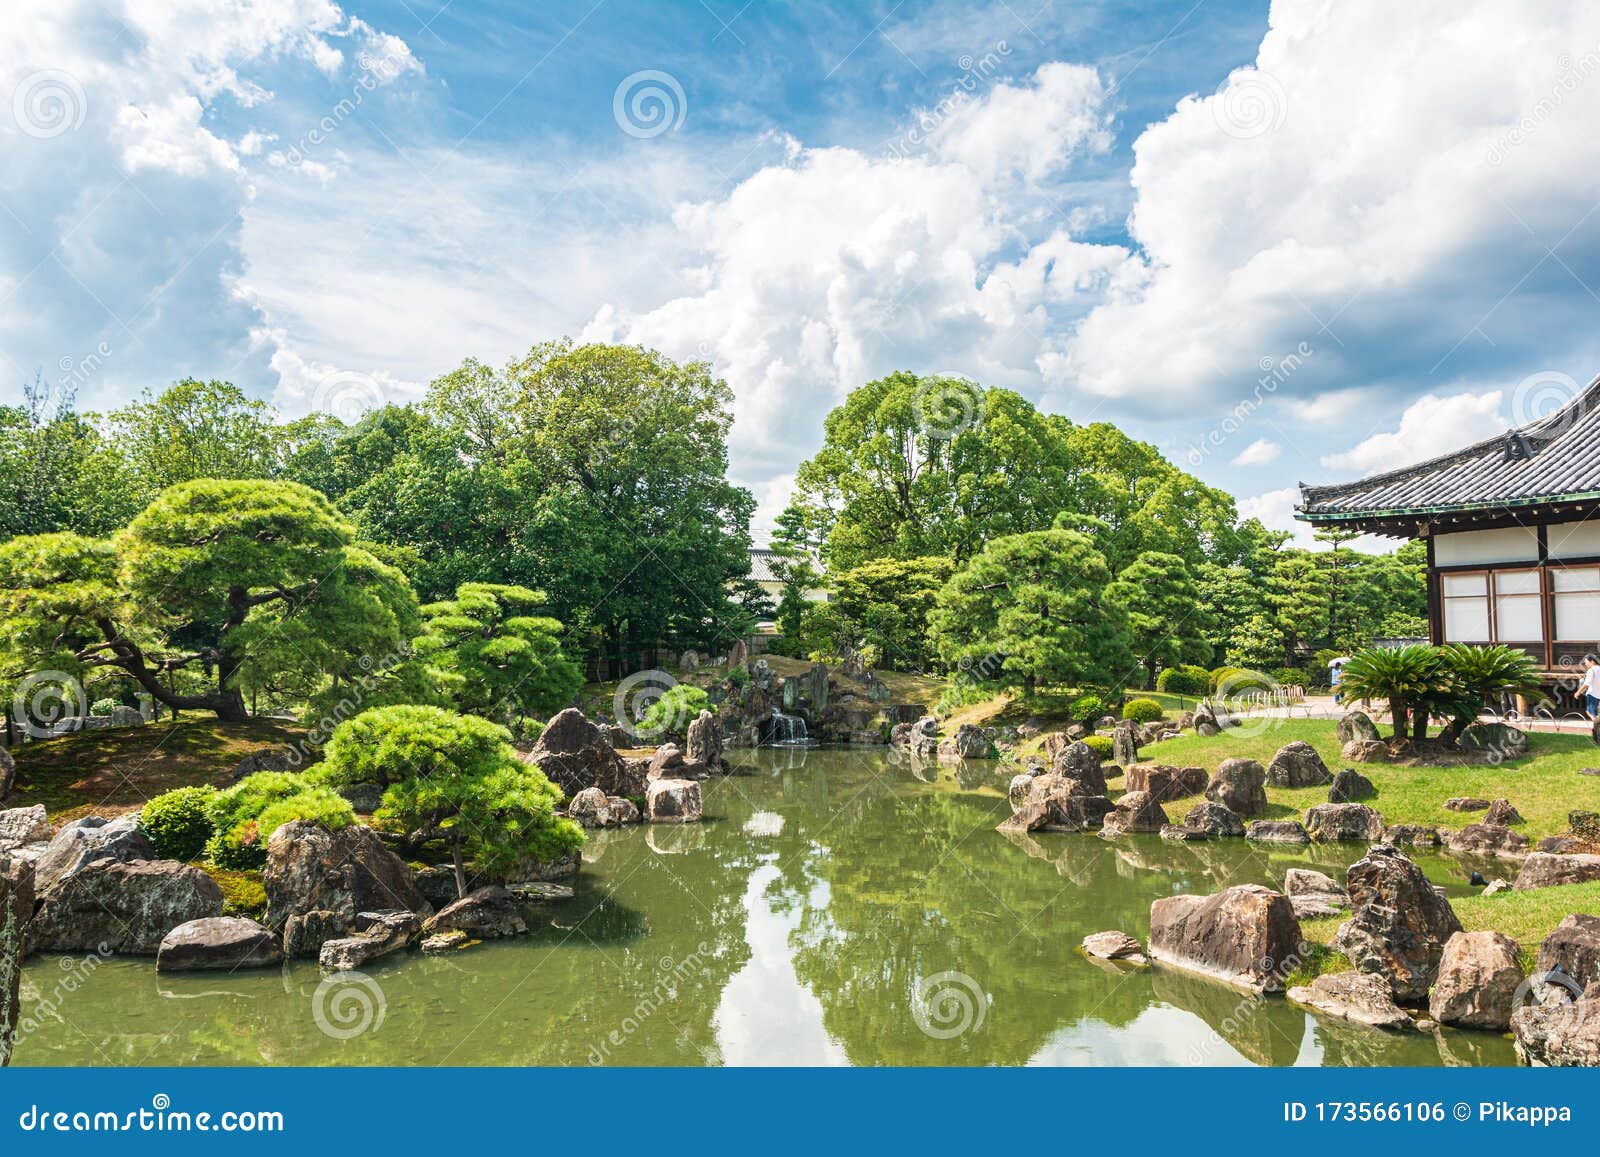 京都御所宫园编辑类照片 图片包括有视图 皇家 宫殿 贿赂 植被 石头 结构树 工厂